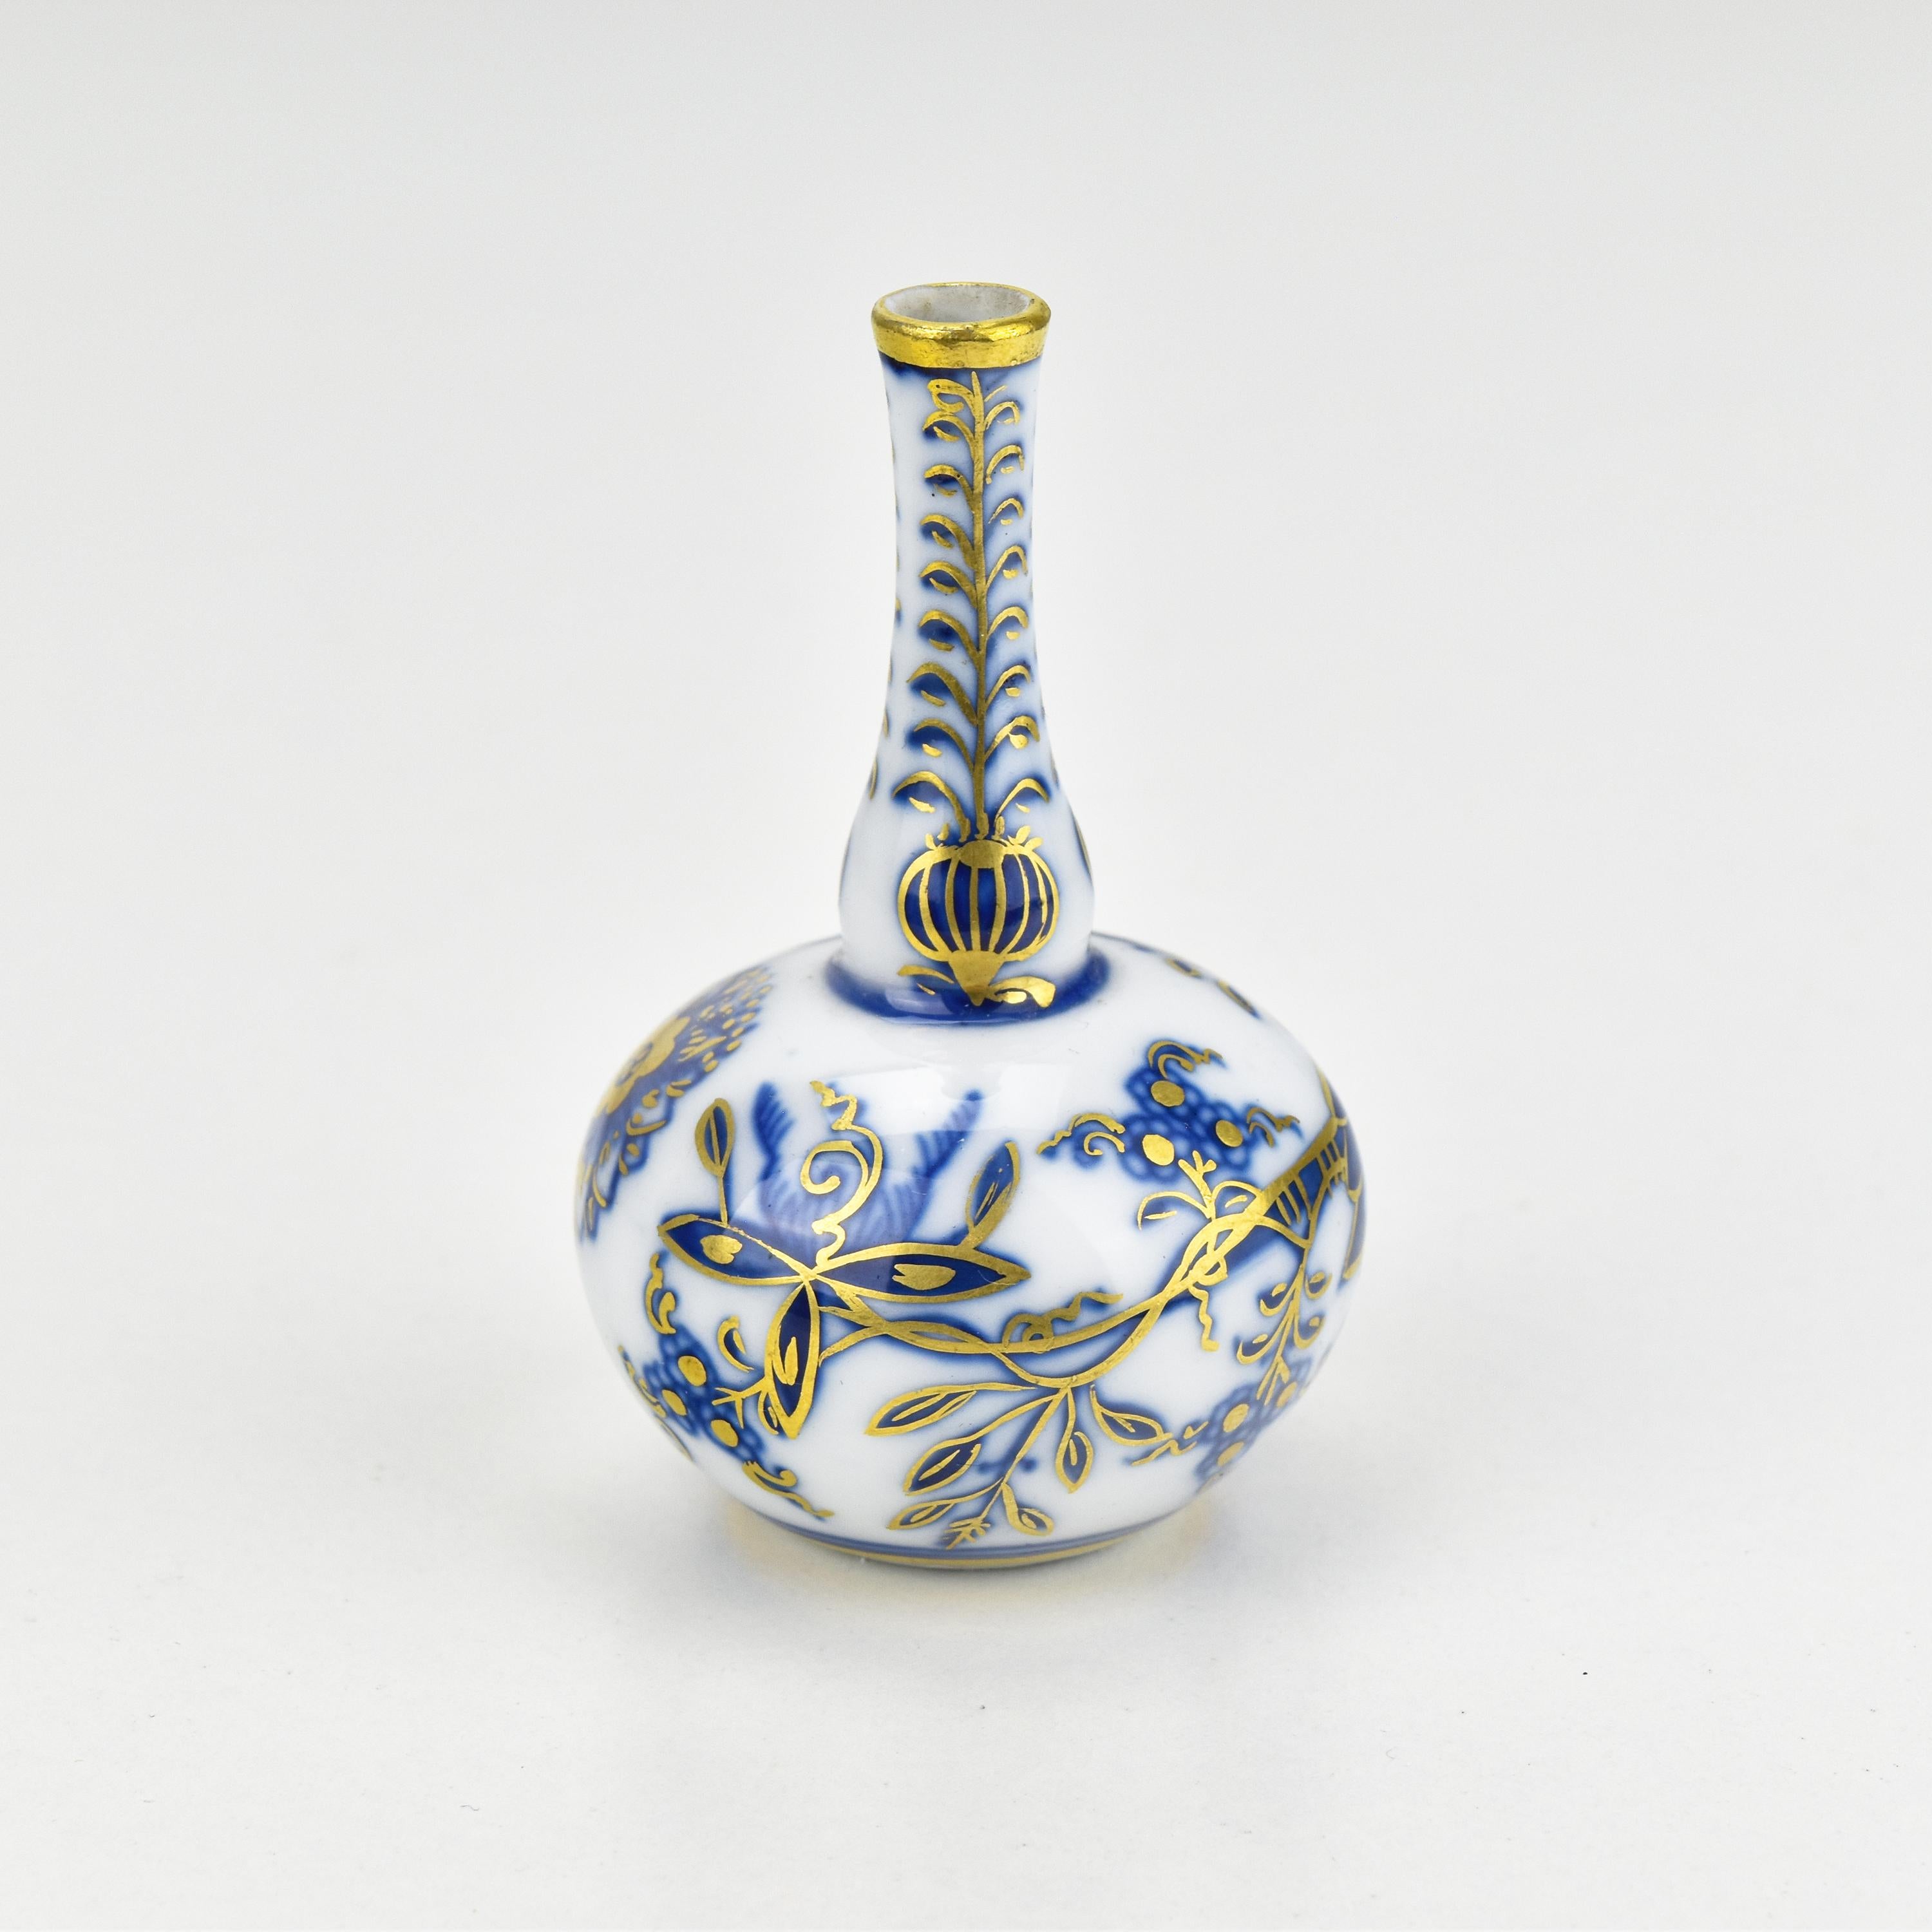 Ce vase miniature ancien de Meissen est un exemple remarquable de l'art de la porcelaine. 

Fabriqué en porcelaine blanche immaculée, il arbore le motif emblématique 